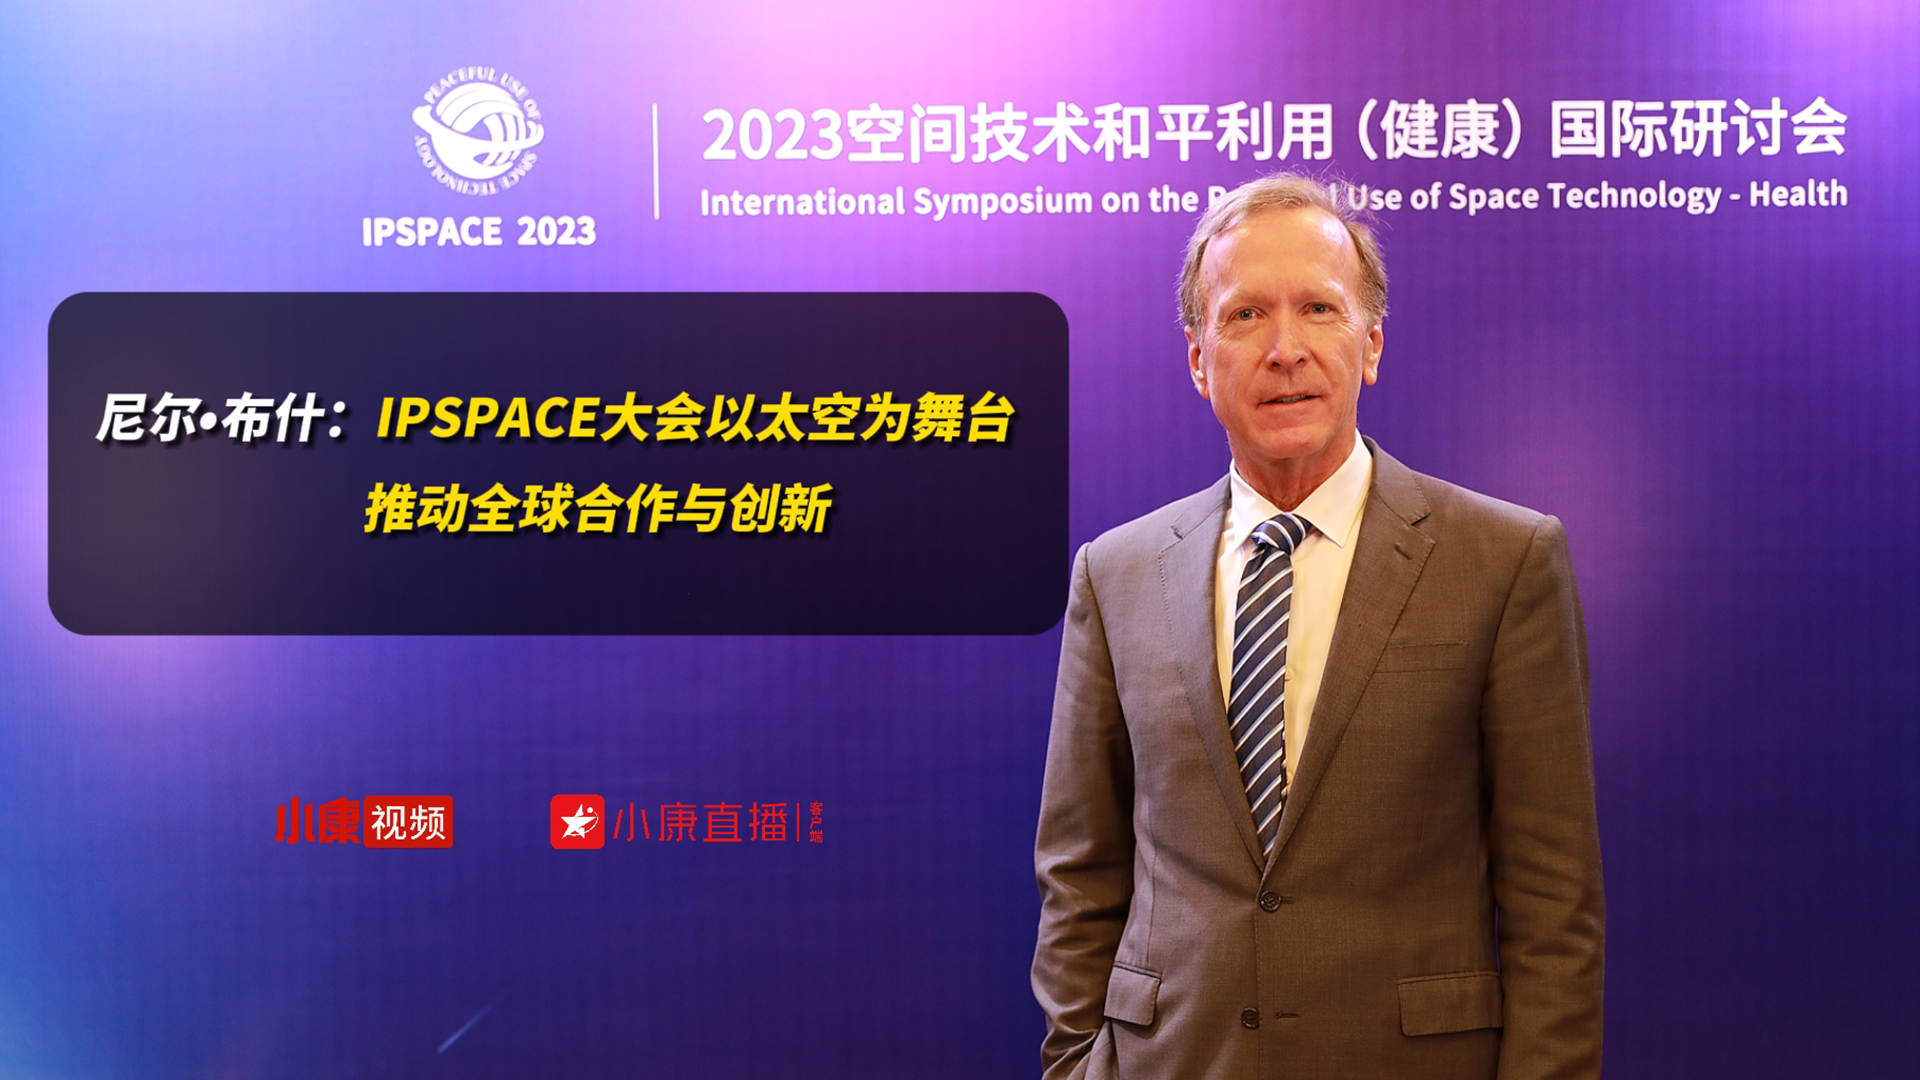 尼尔•布什：IPSPACE大会以太空为舞台 推动全球合作与创新